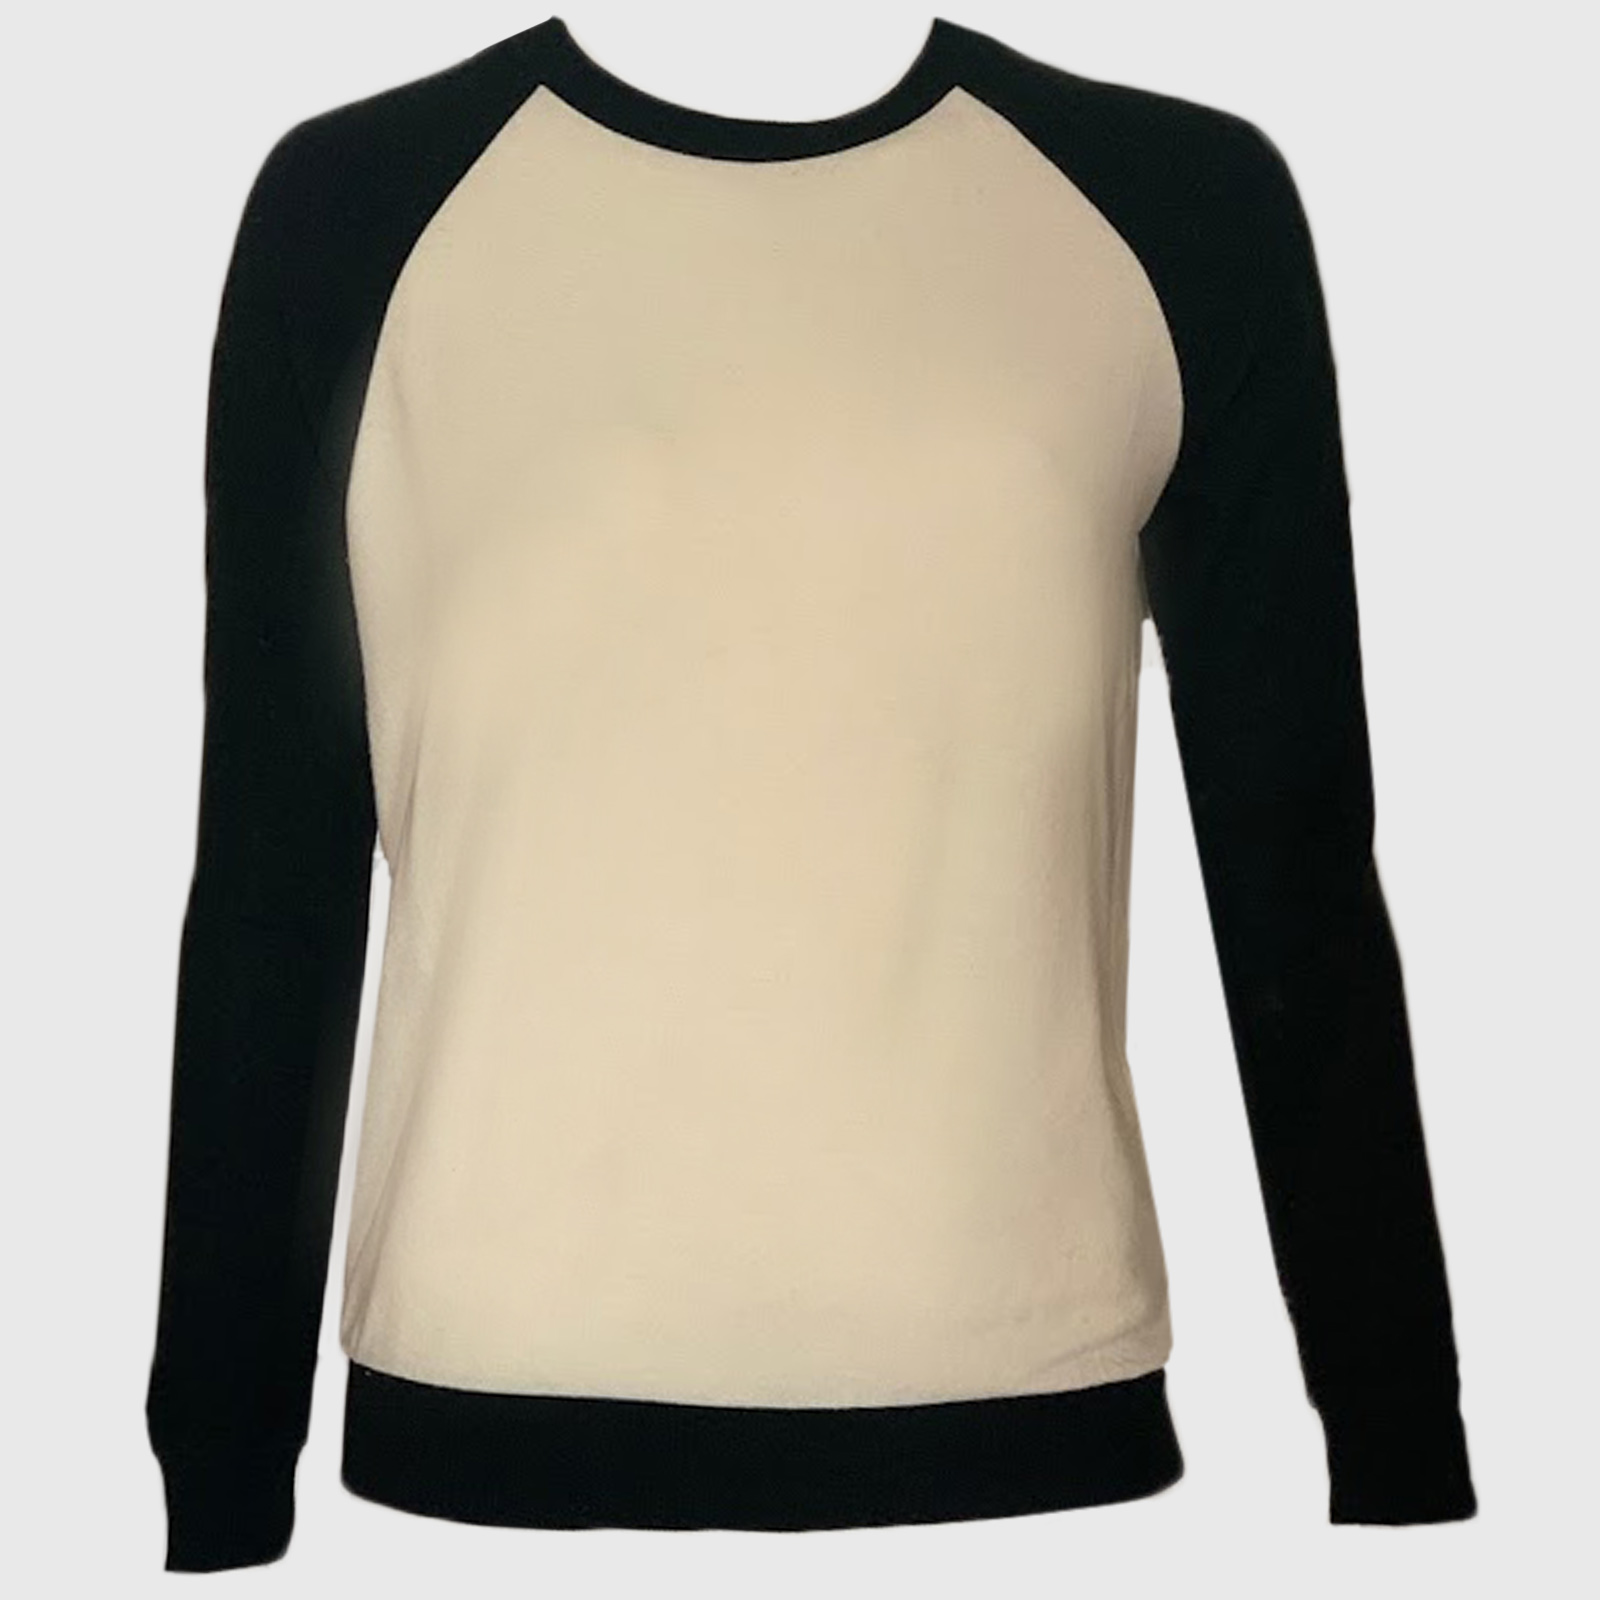 Женский свитер реглан от ТМ Z Supply – легко интерпретировать в любом образе: с брюками, джинсами, юбками №152